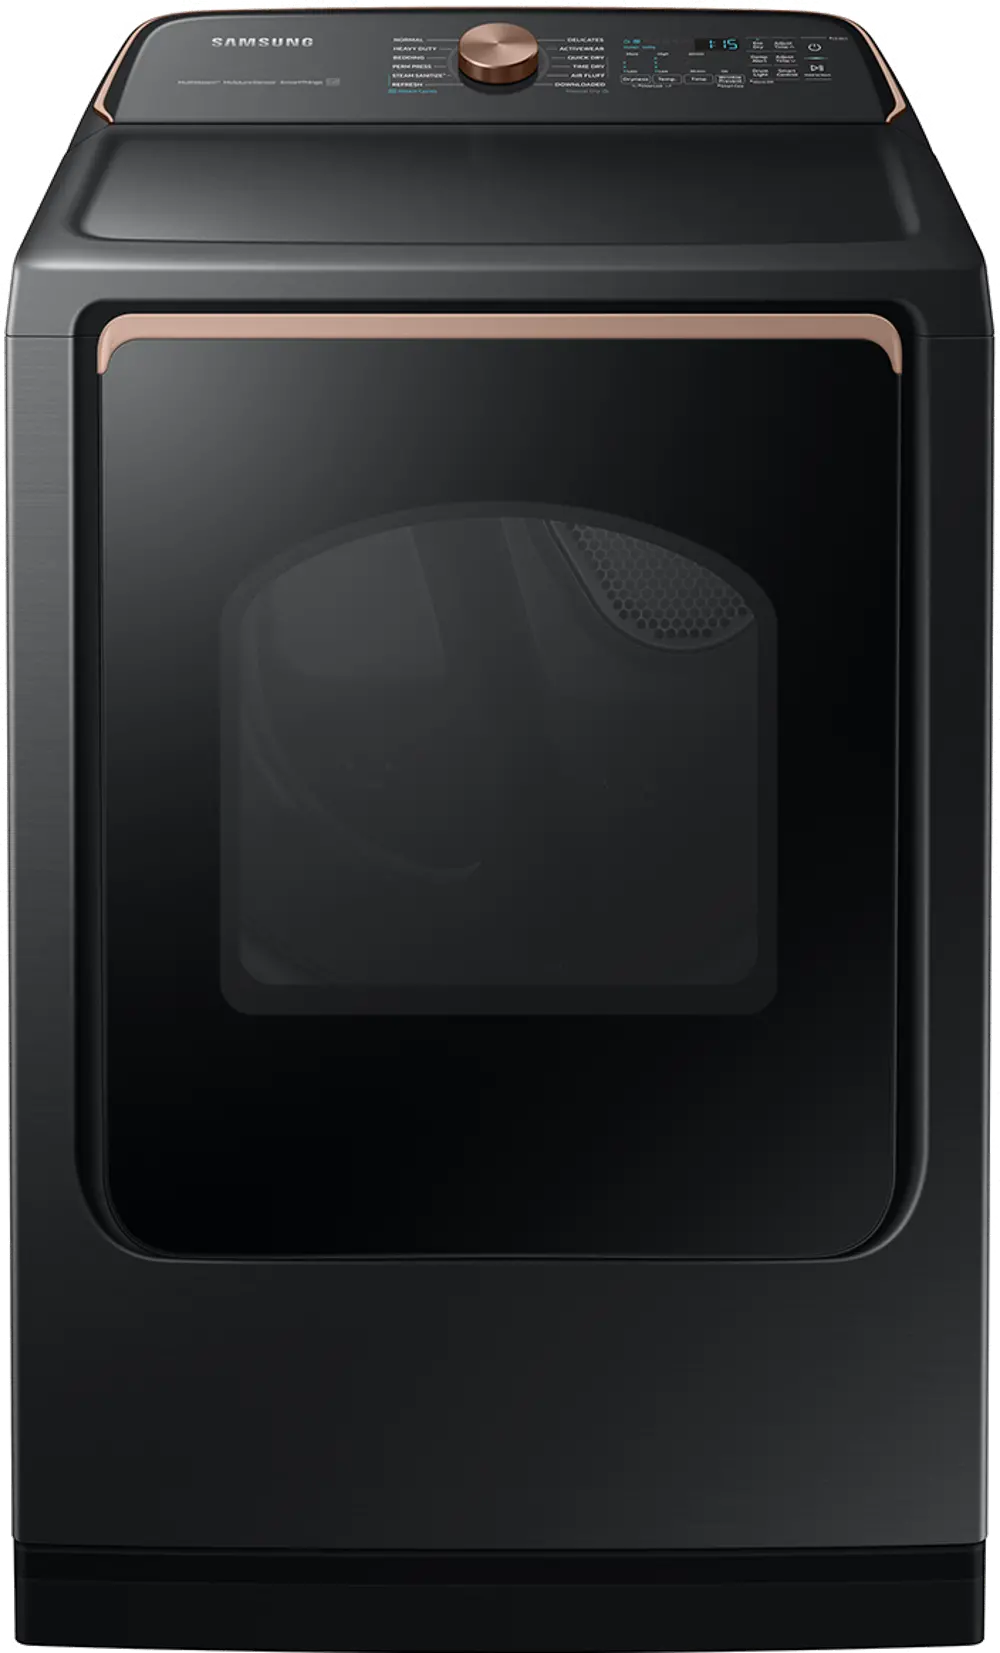 DVG55A7700V Samsung 7.4 cu. ft. Smart Gas Dryer with Steam Sanitize+ - Brushed Black-1